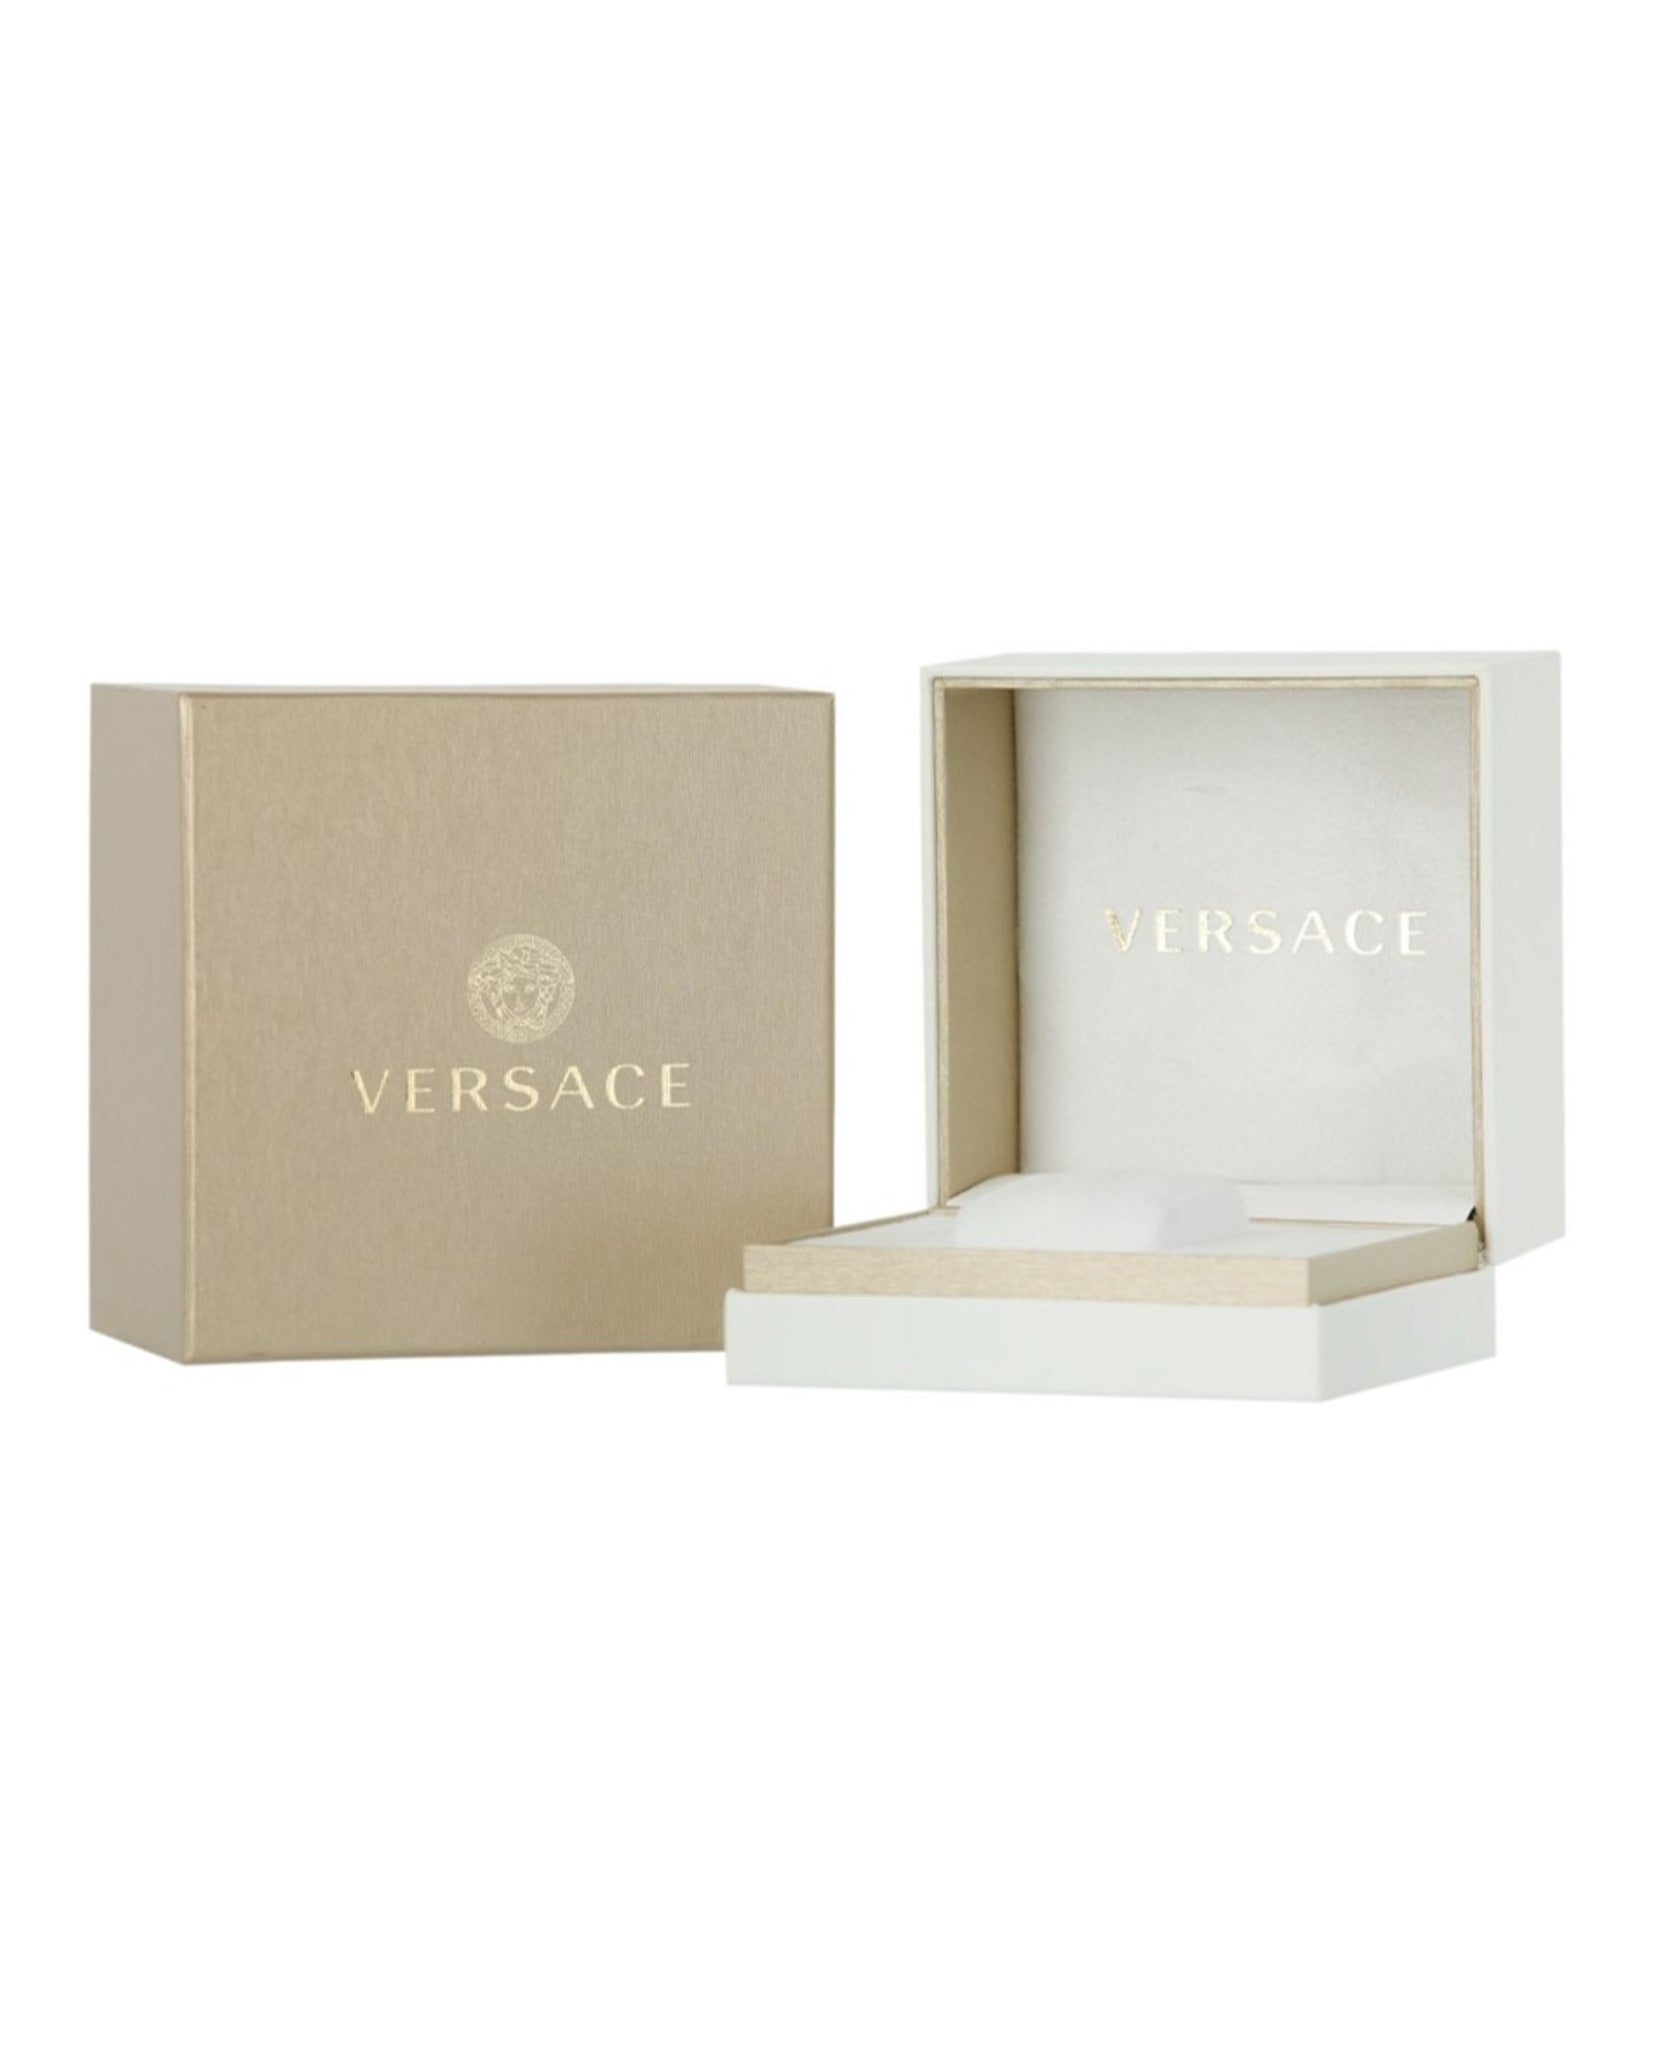 Versace Code Bracelet Watch